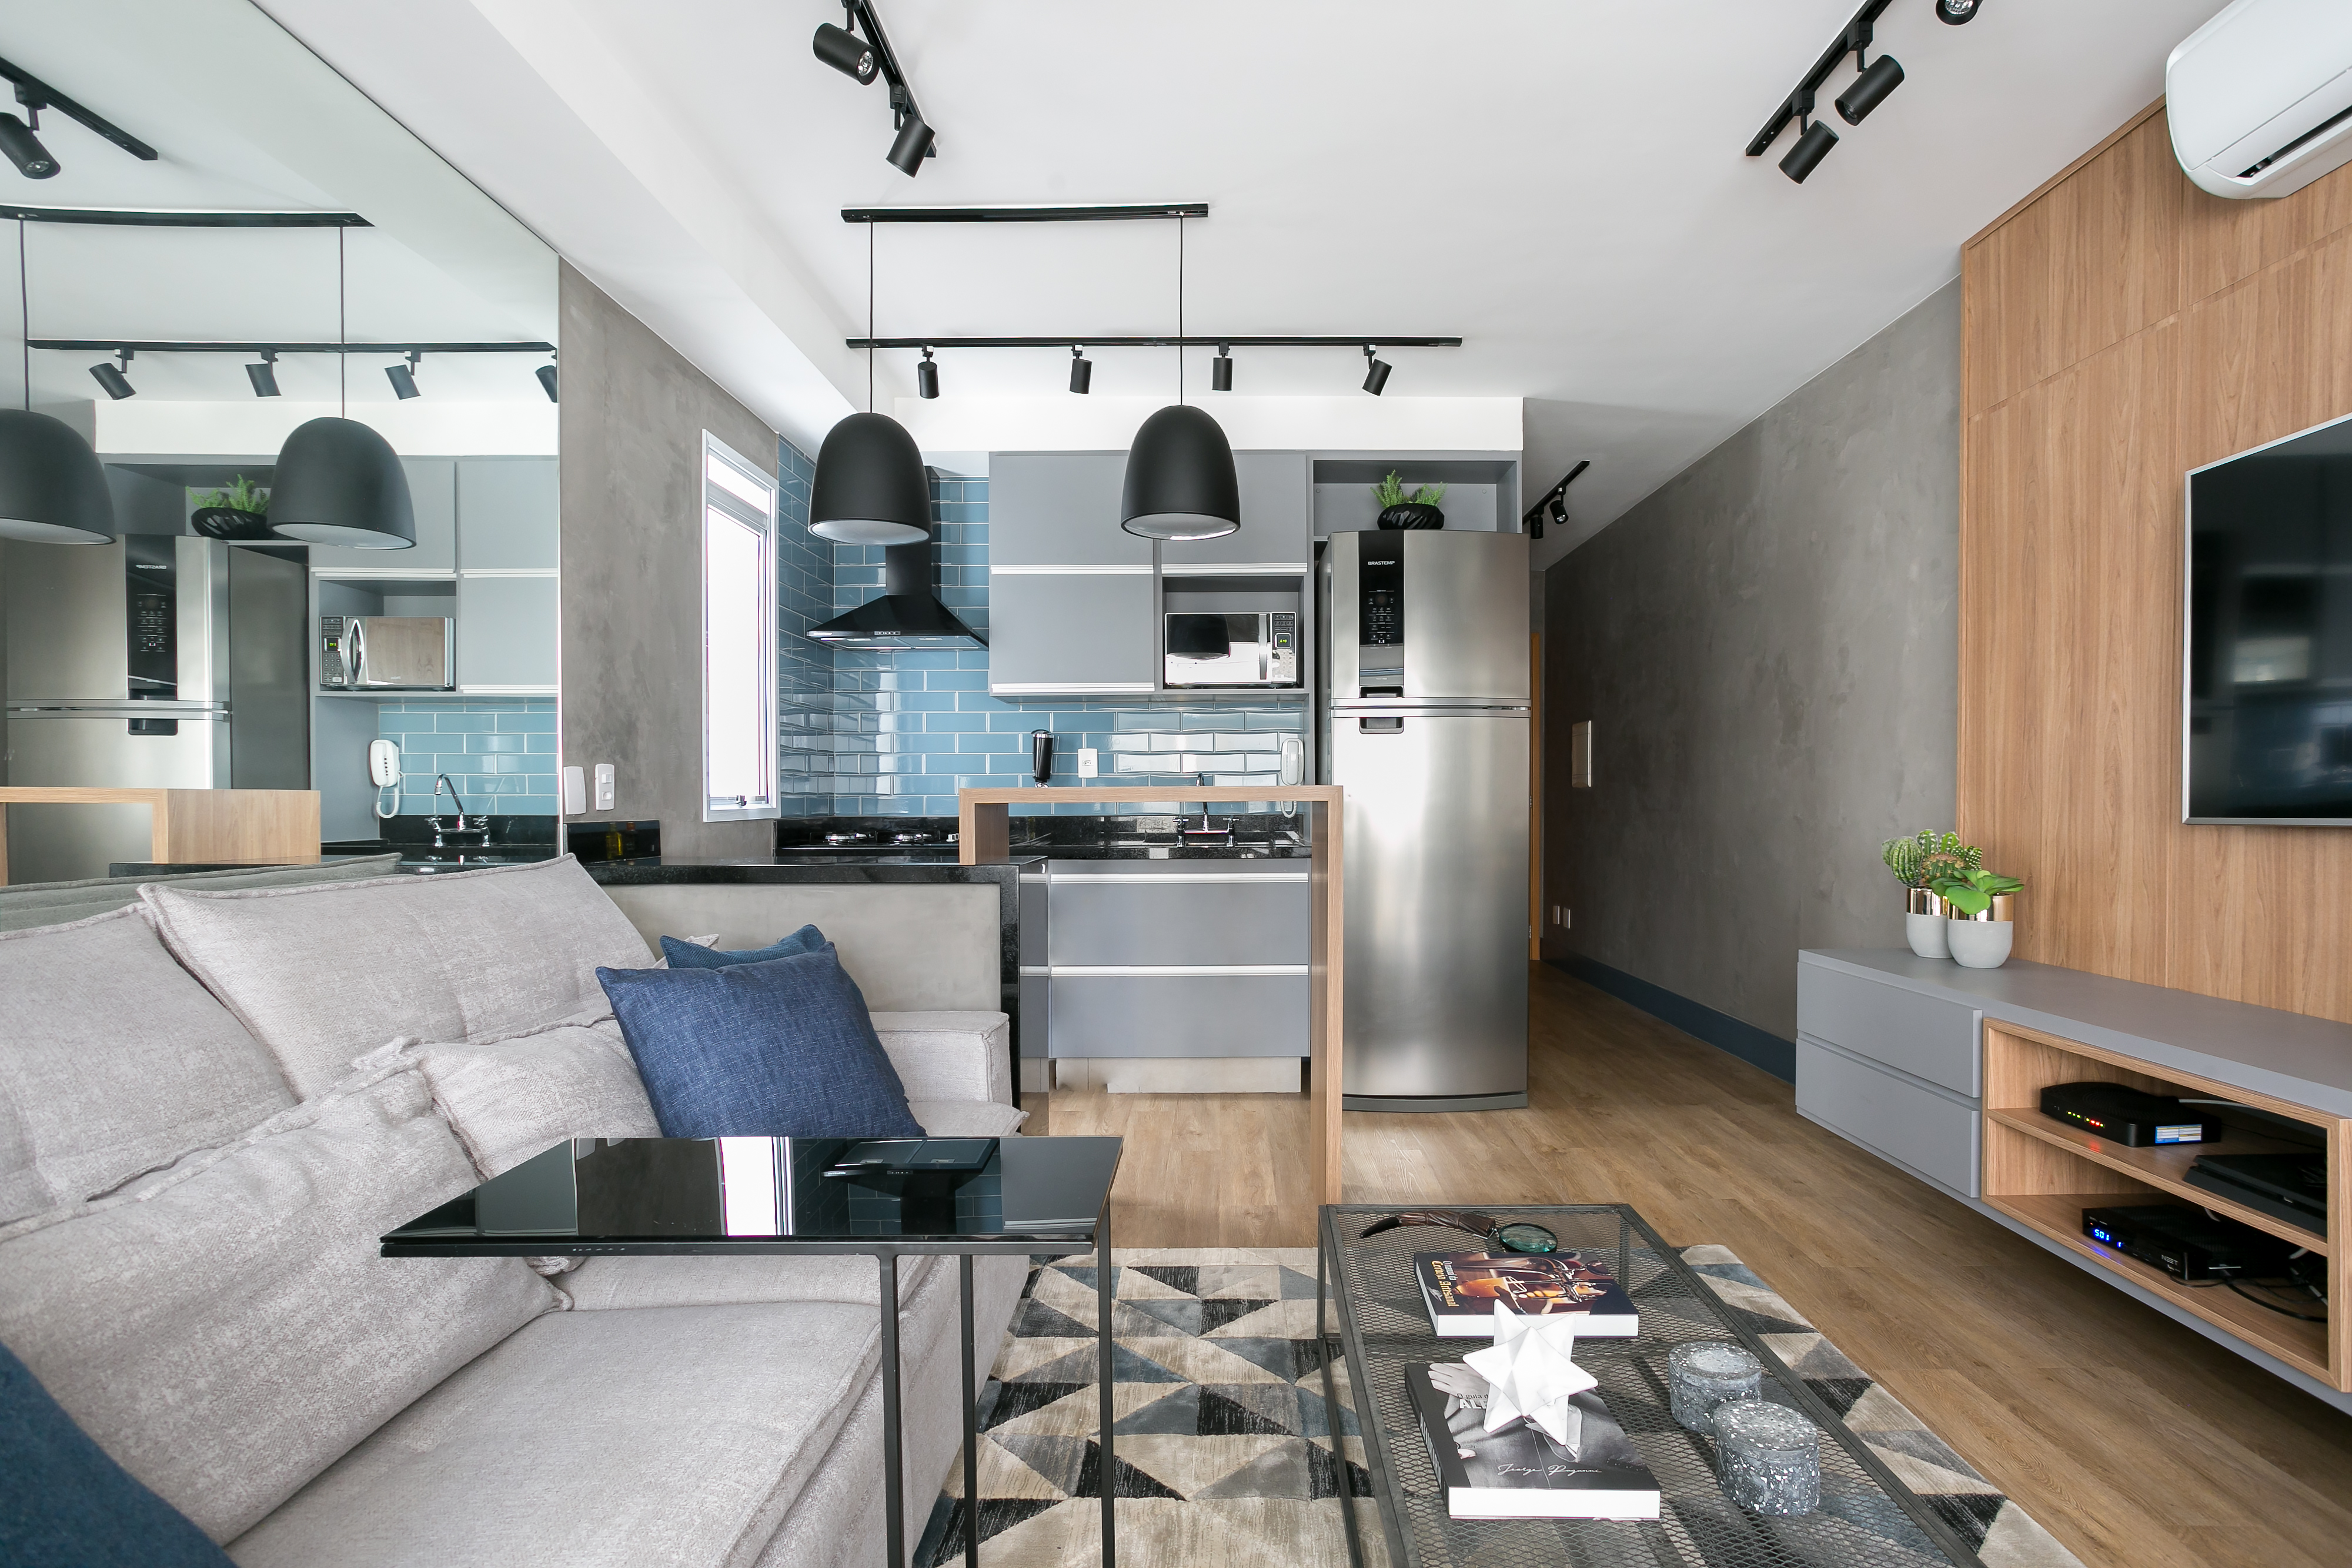  Pequeno apartamento de 43 m² con estilo industrial chic